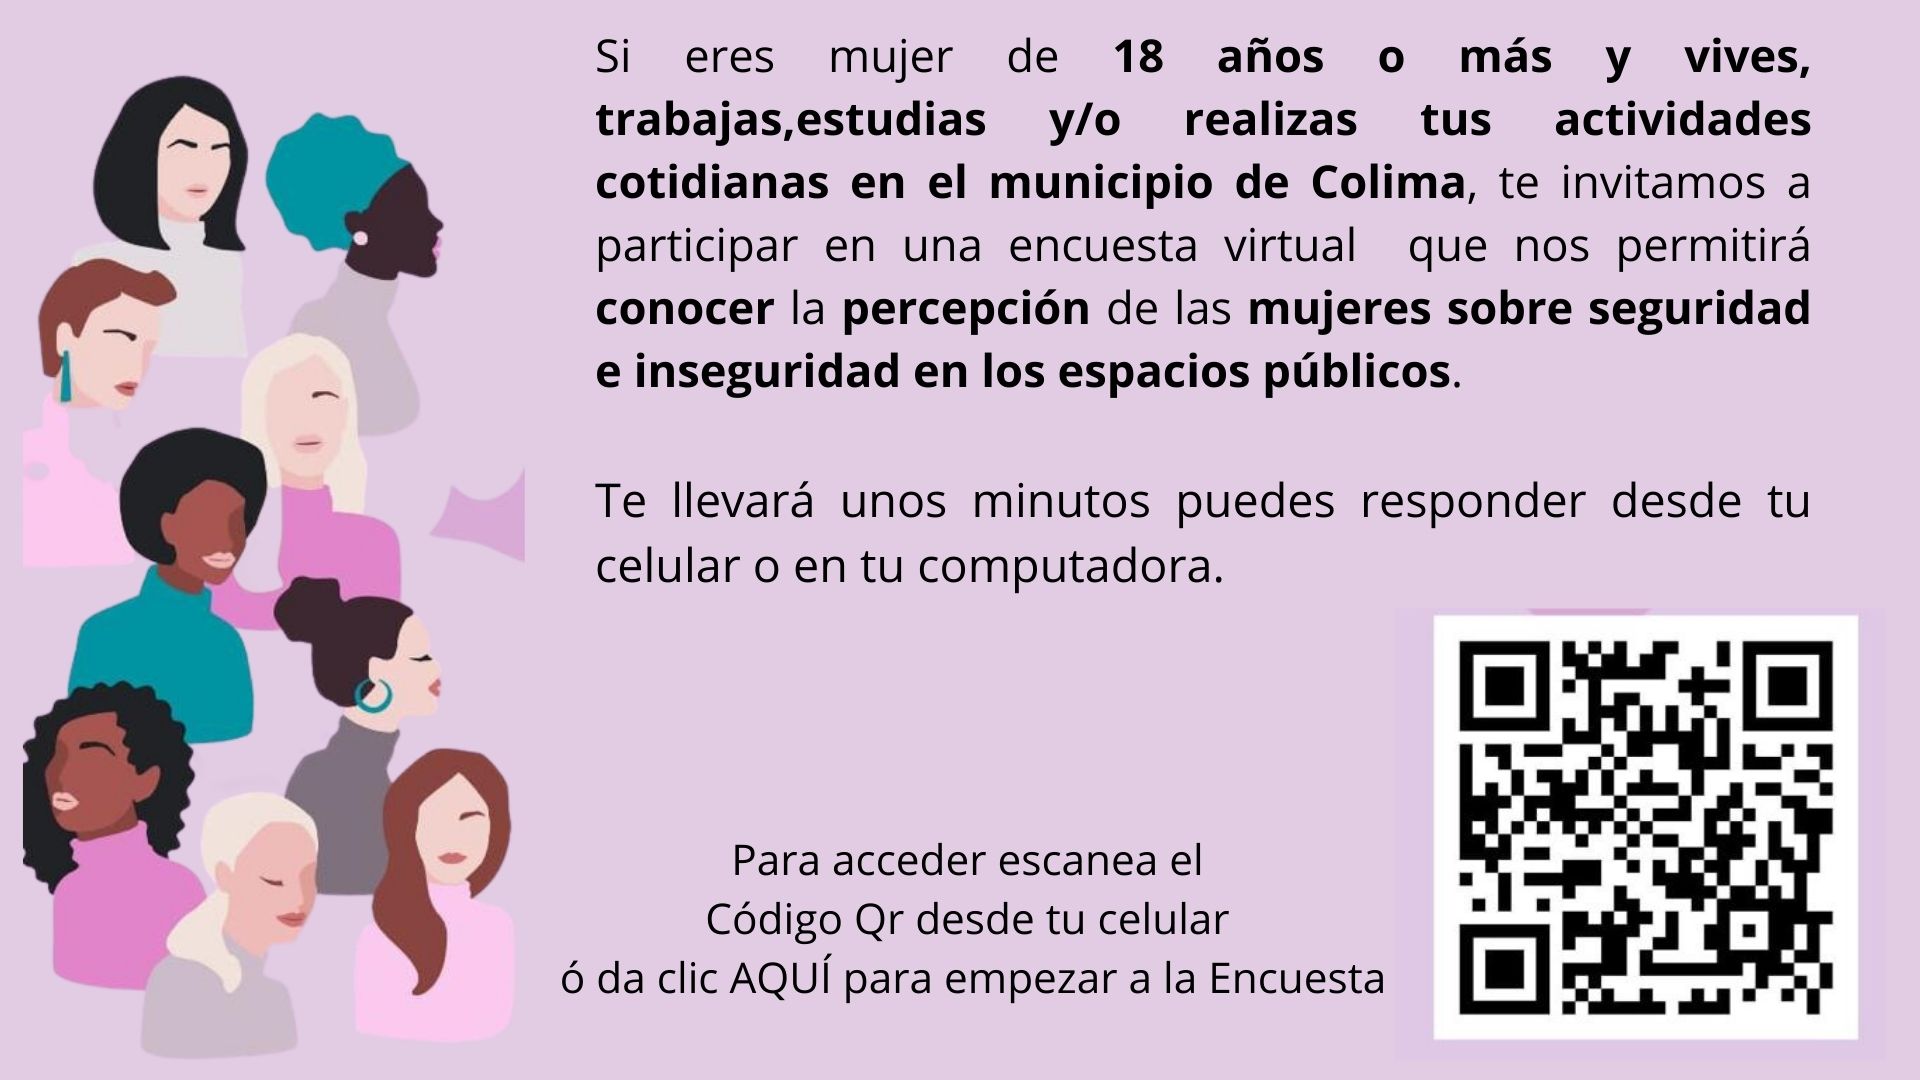 Percepción de seguridad e inseguridad en los espacios públicos del municipio de Colima ante la violencia de género